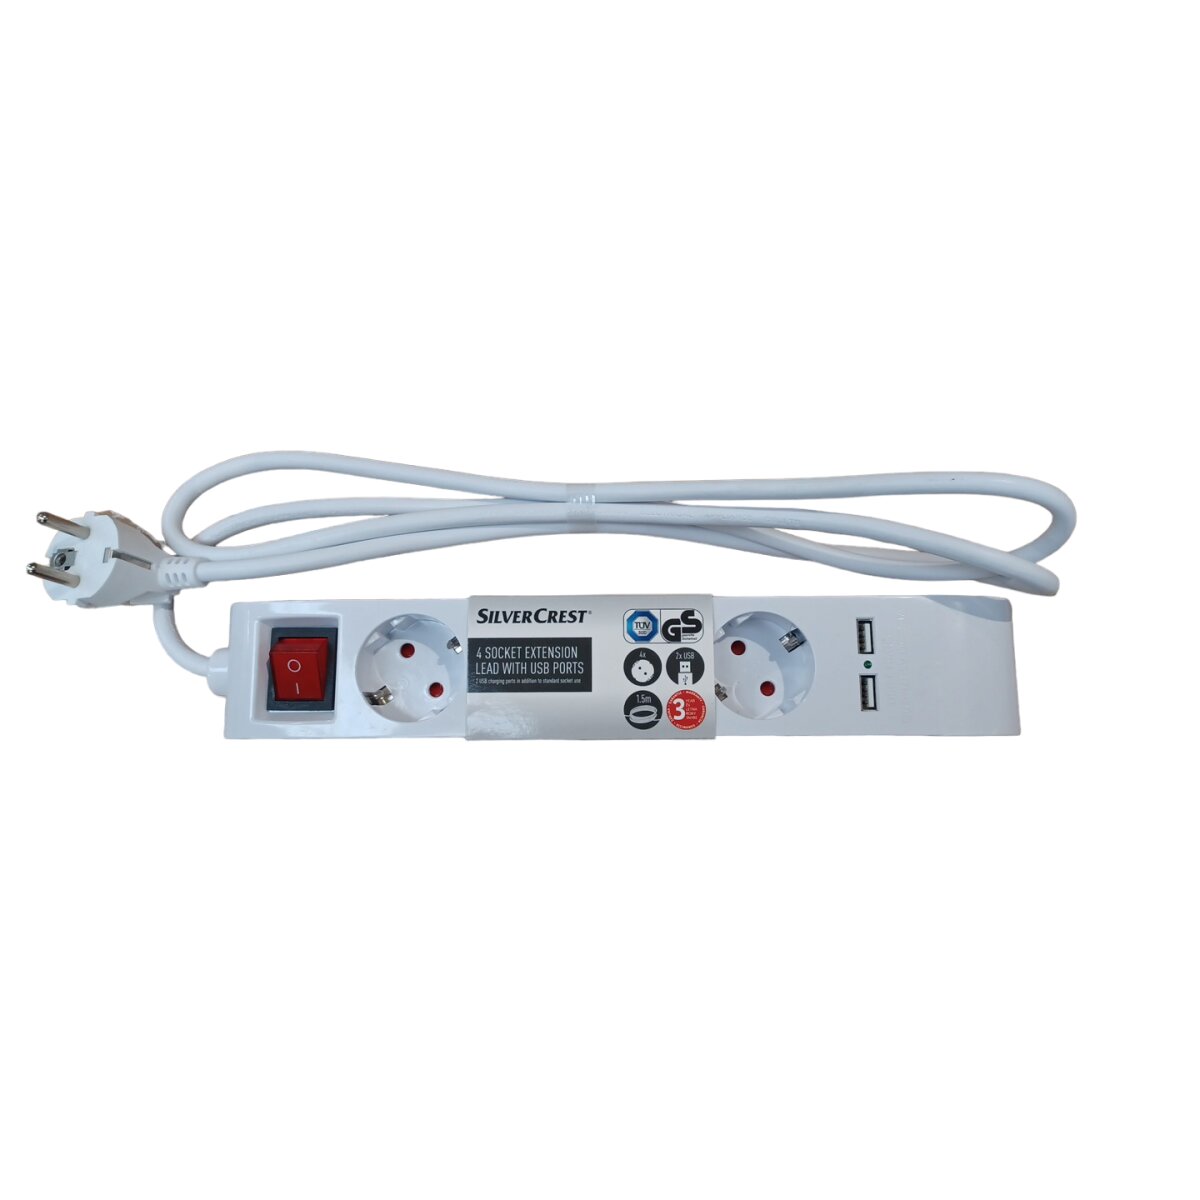 SILVERCREST® Steckdosenleiste, 4-fach mit USB - B-Ware neuwertig, 7,99 €